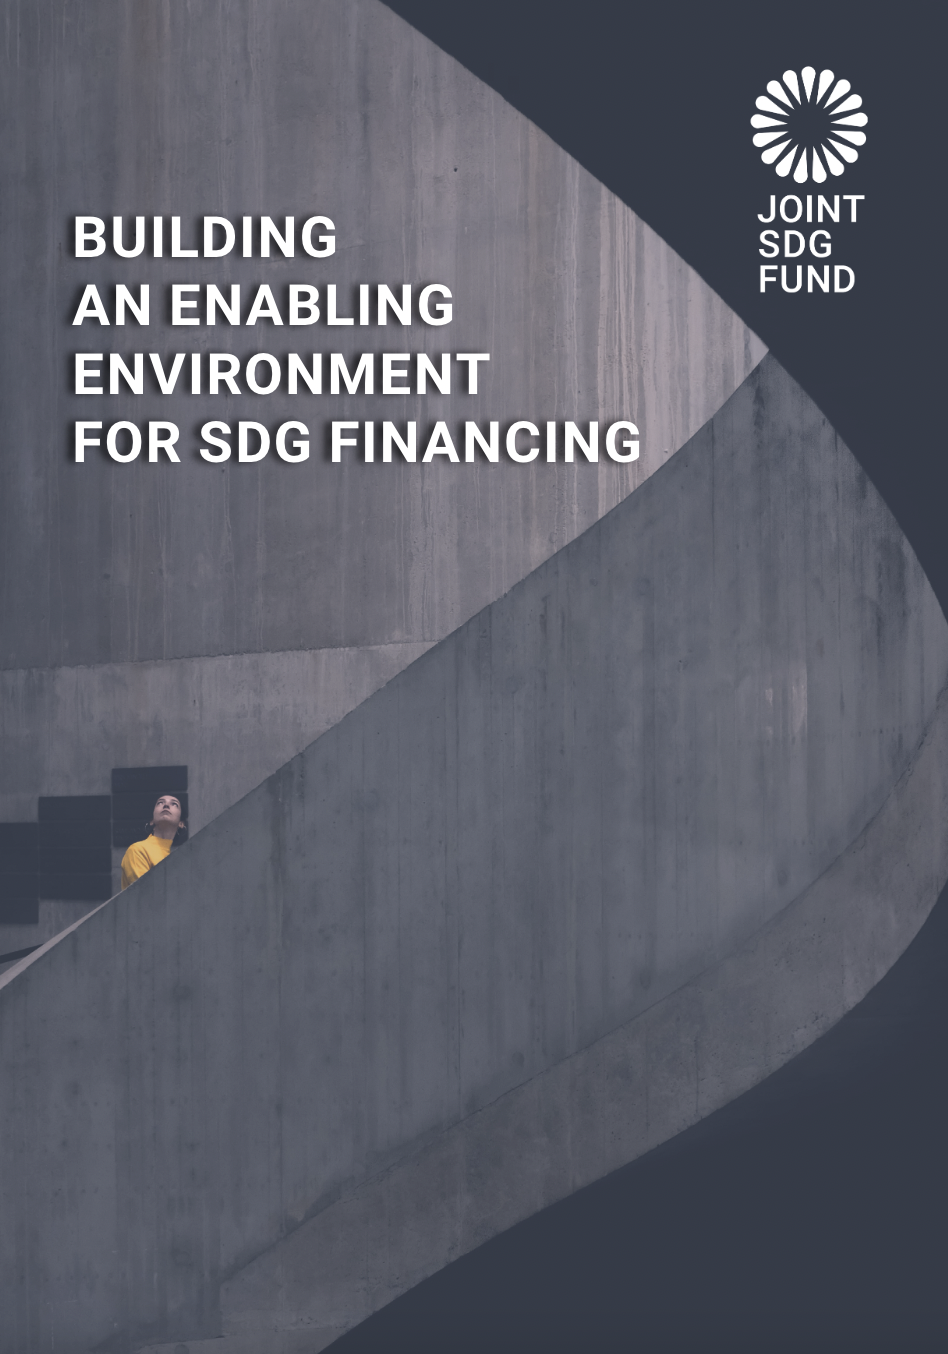 BUILDINGAN ENABLING ENVIRONMENT FOR SDG FINANCING